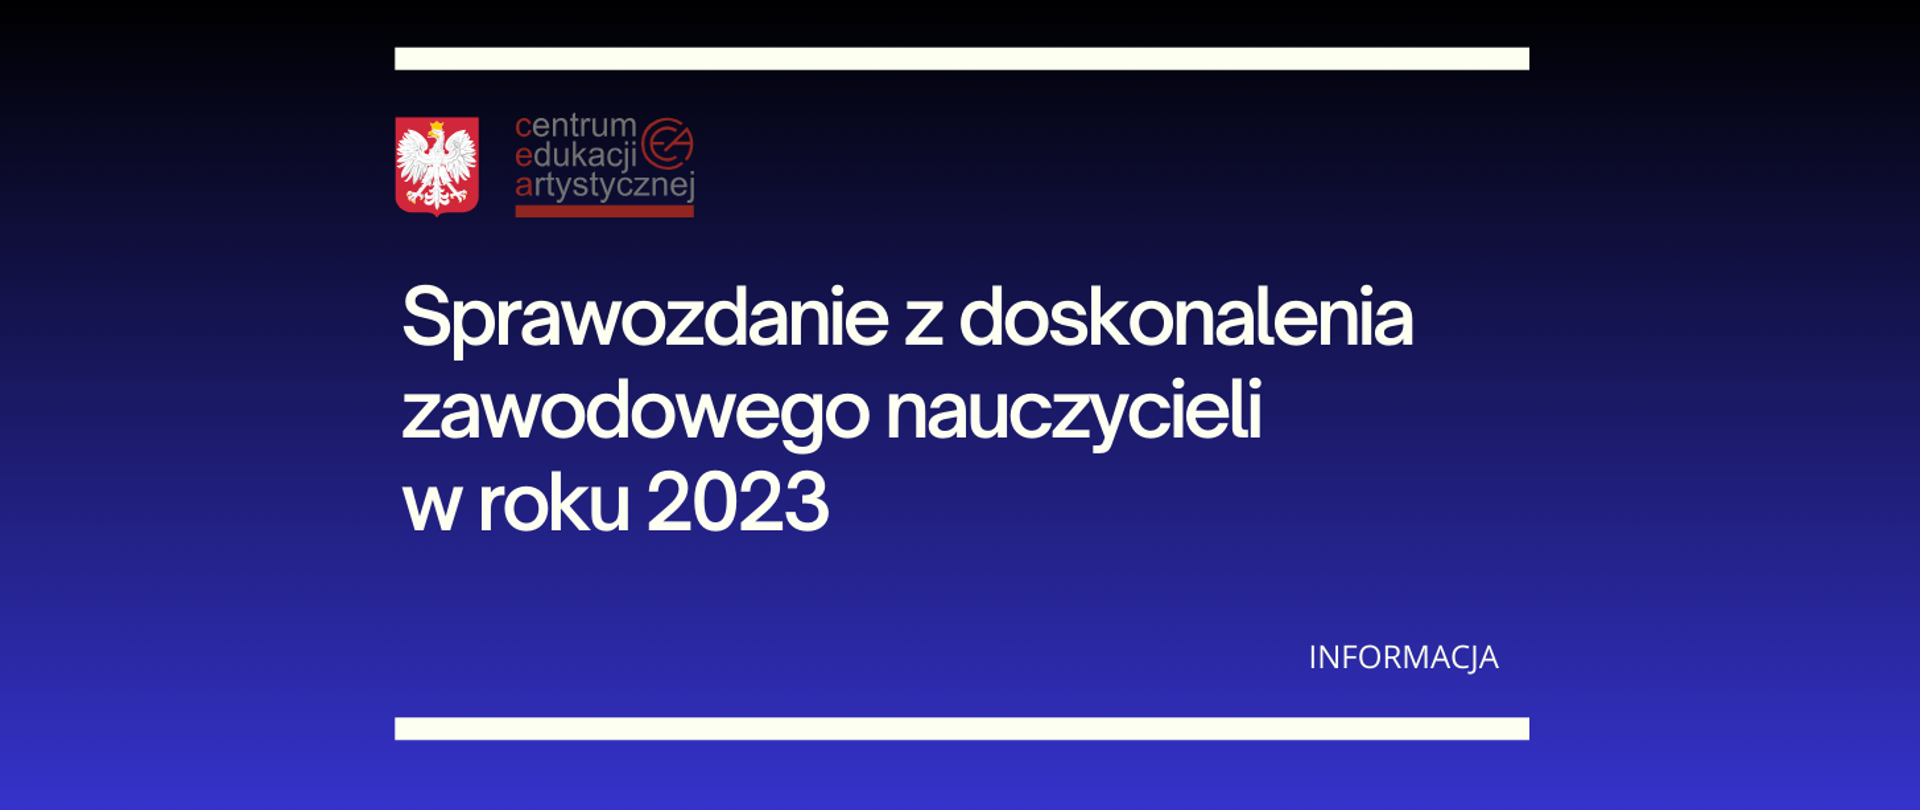 Niebieska grafika z tekstem "Sprawozdanie z doskonalenia zawodowego nauczycieli w roku 2023 - informacja" i logo z orzełkiem